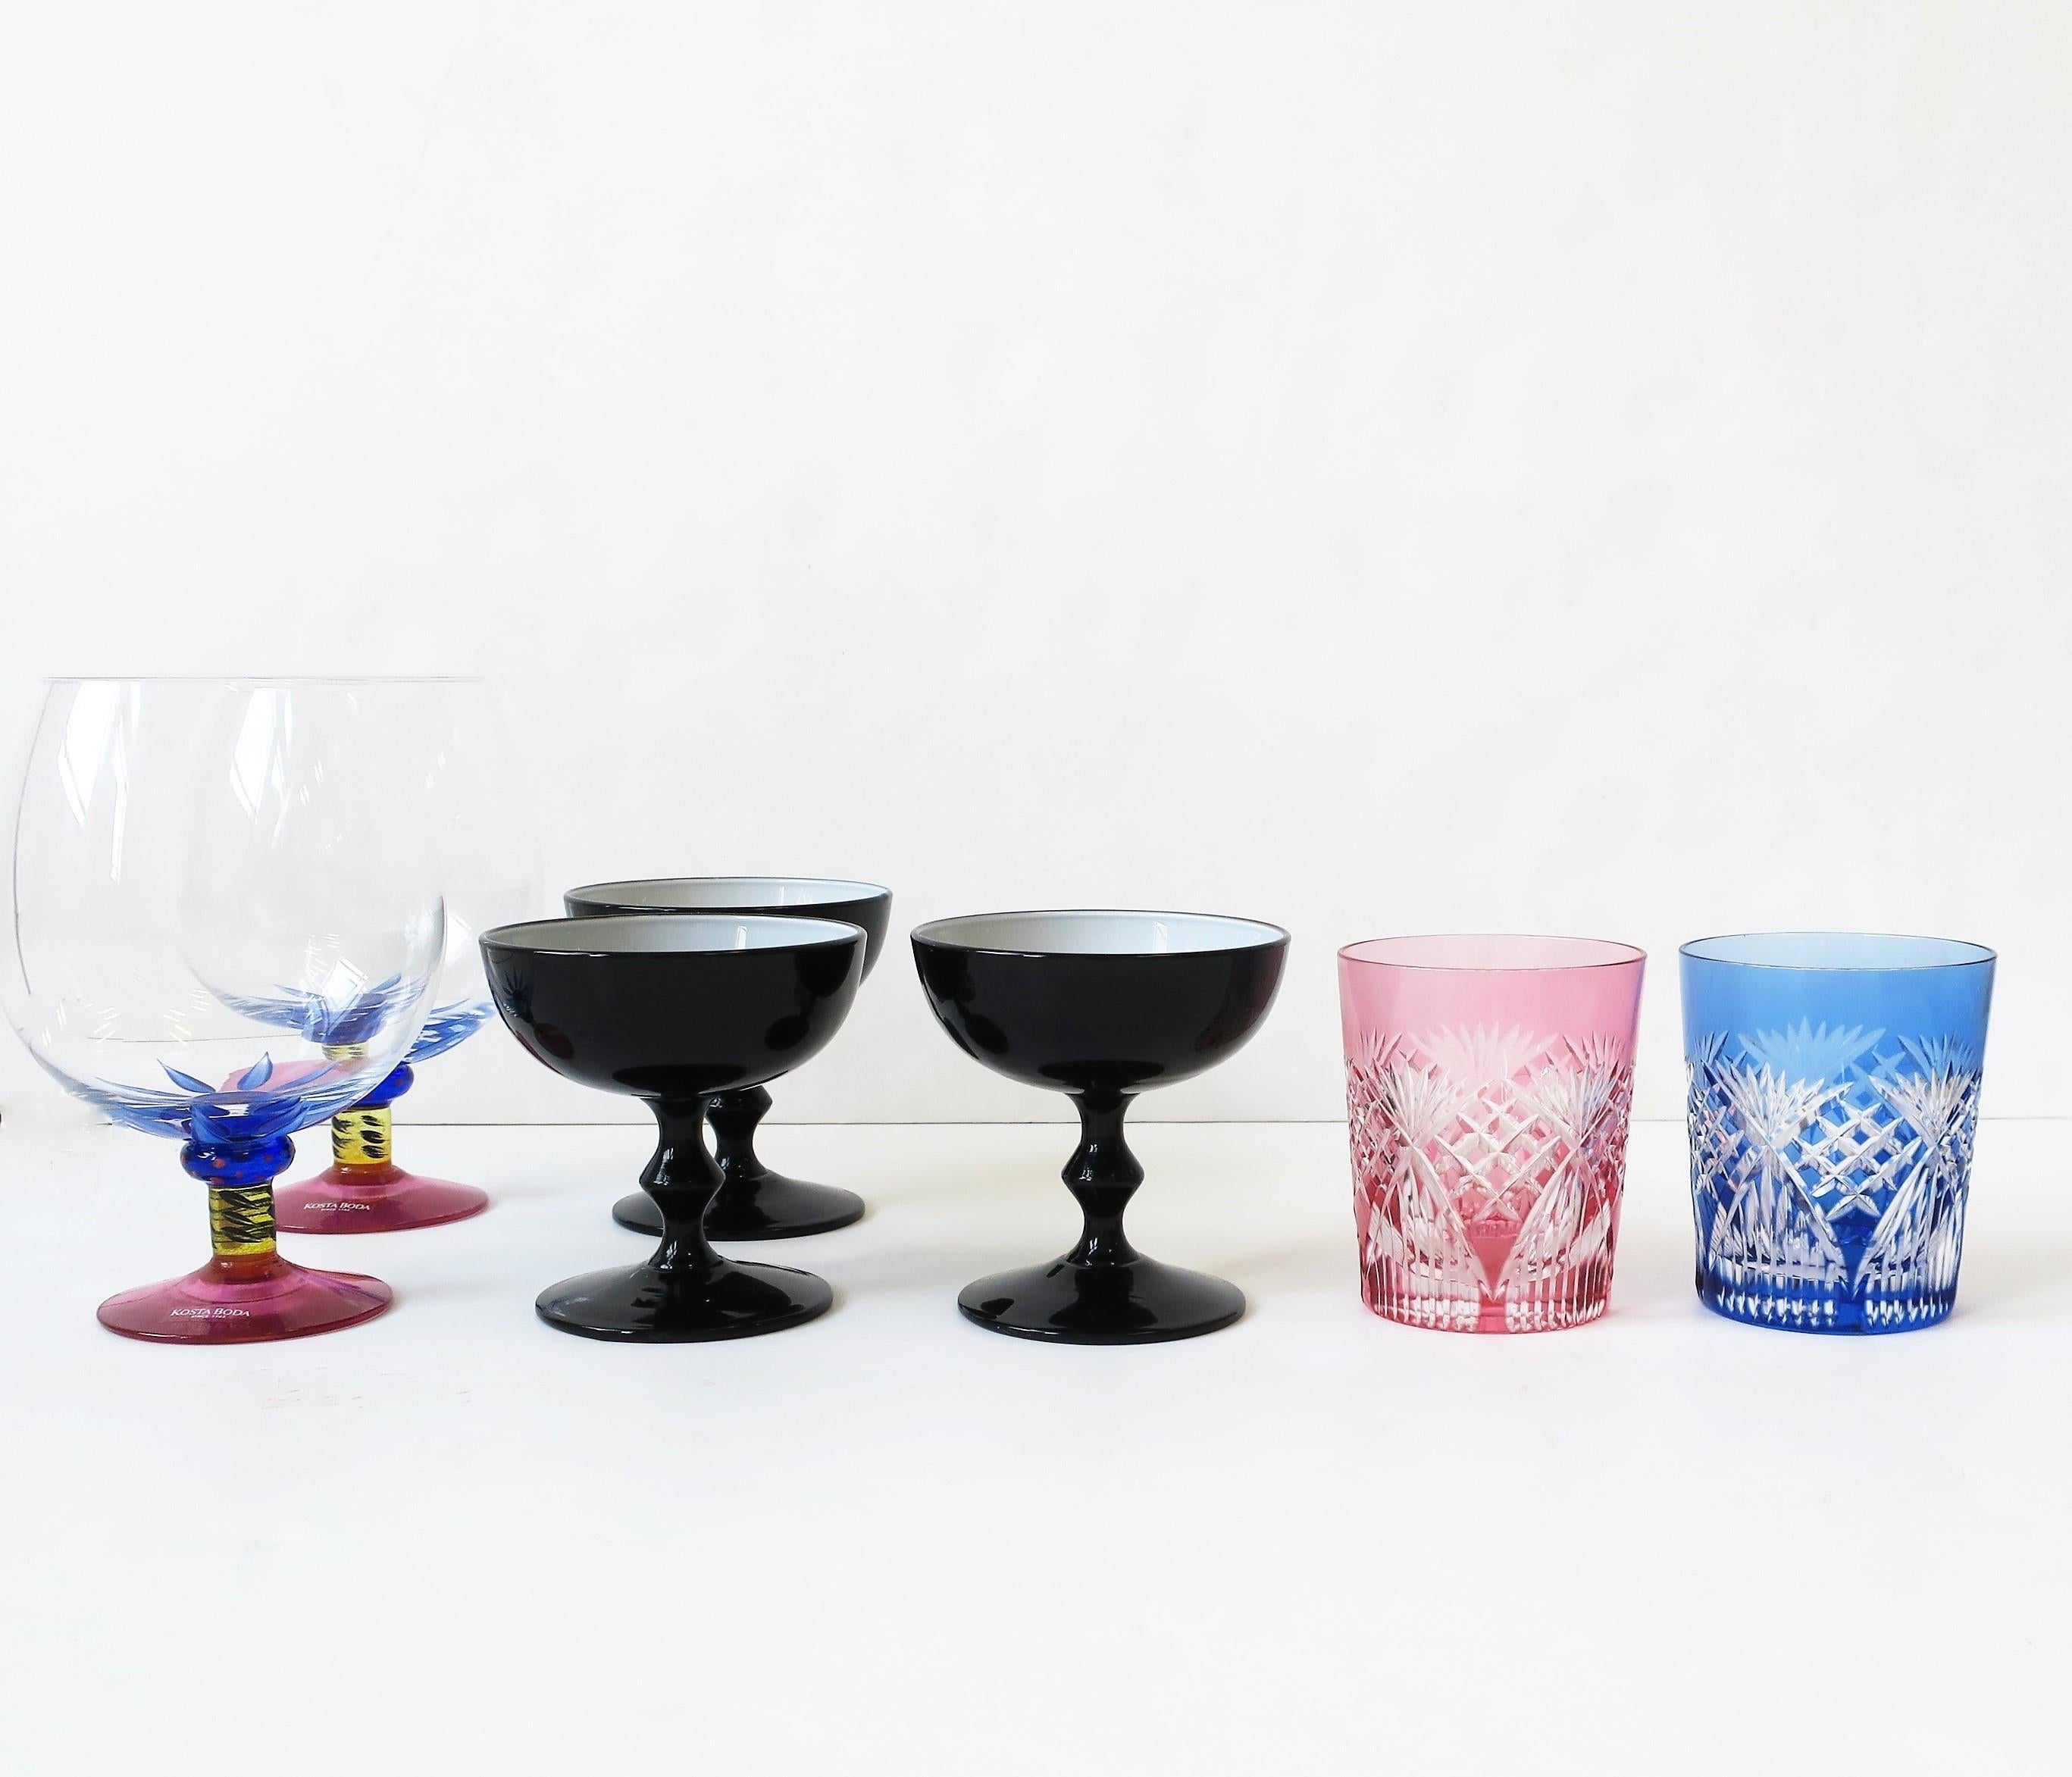 Designer Postmodern Art Glass Cocktail Brandy Glasses by Kosta Boda, '90s Sweden 3